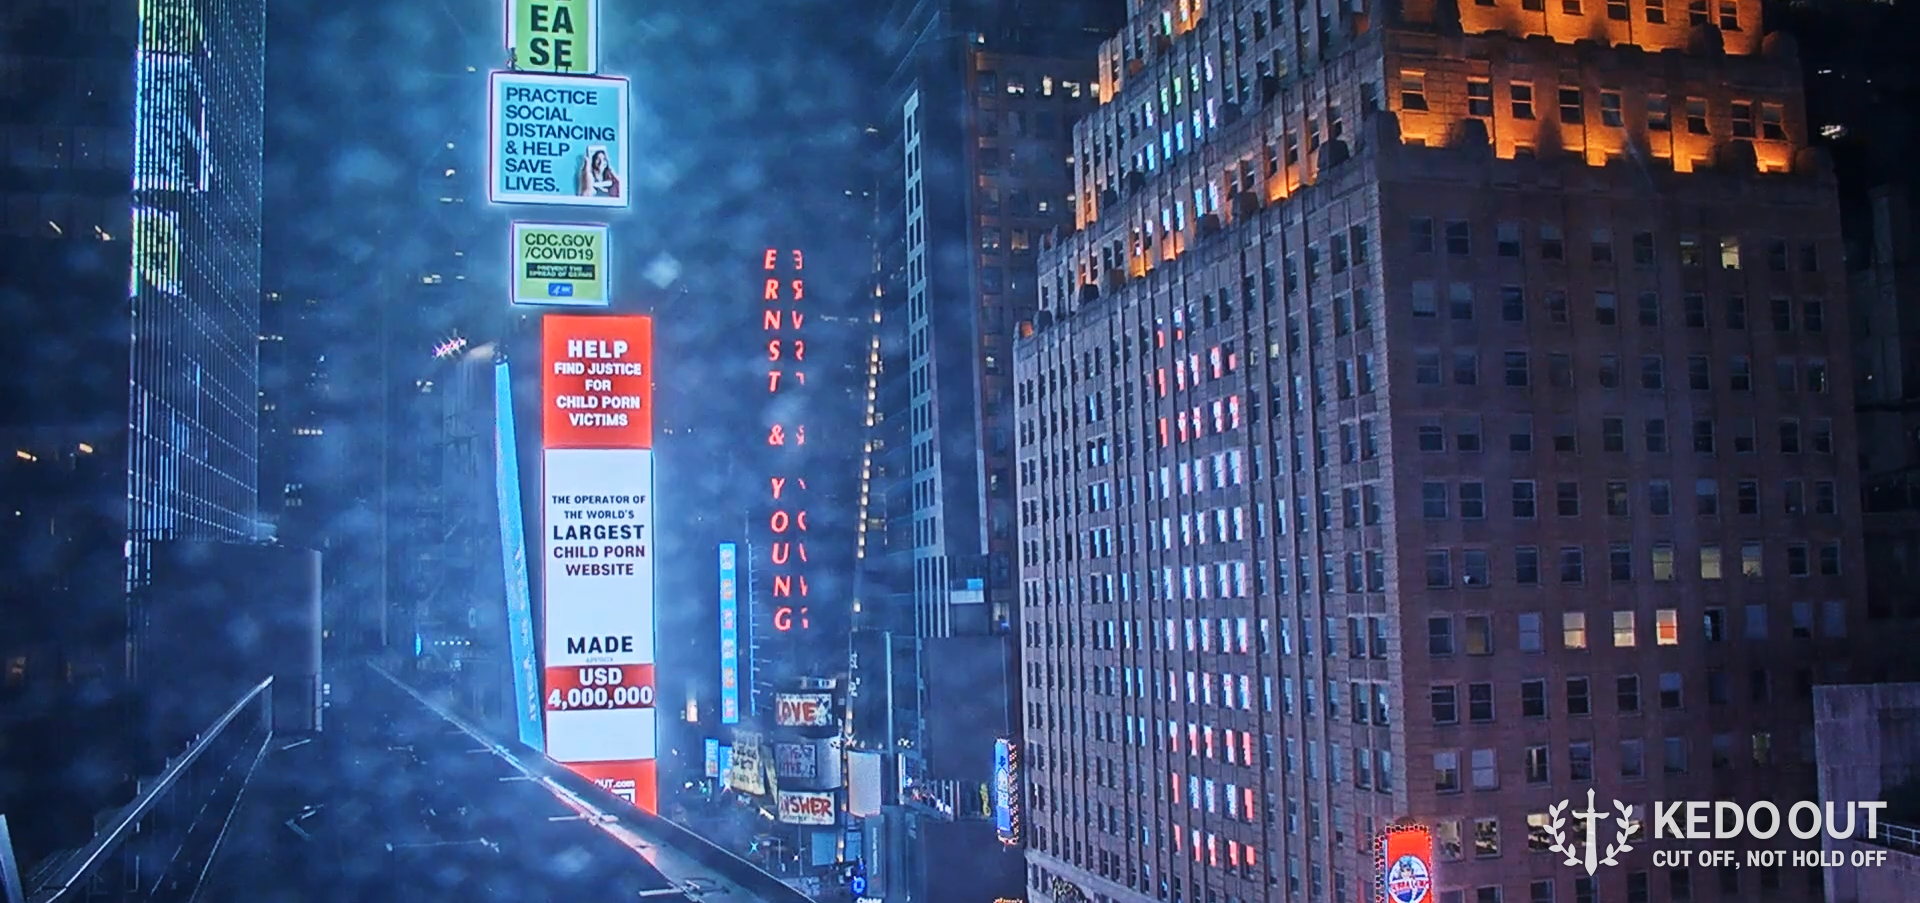 31일(현지시간) 미국 뉴욕 타임스퀘어 전광판에 걸린 세계 최대 아동 성착취물 사이트 ‘W2V’ 솜방망이 처벌 비판 광고. 케도아웃 제공